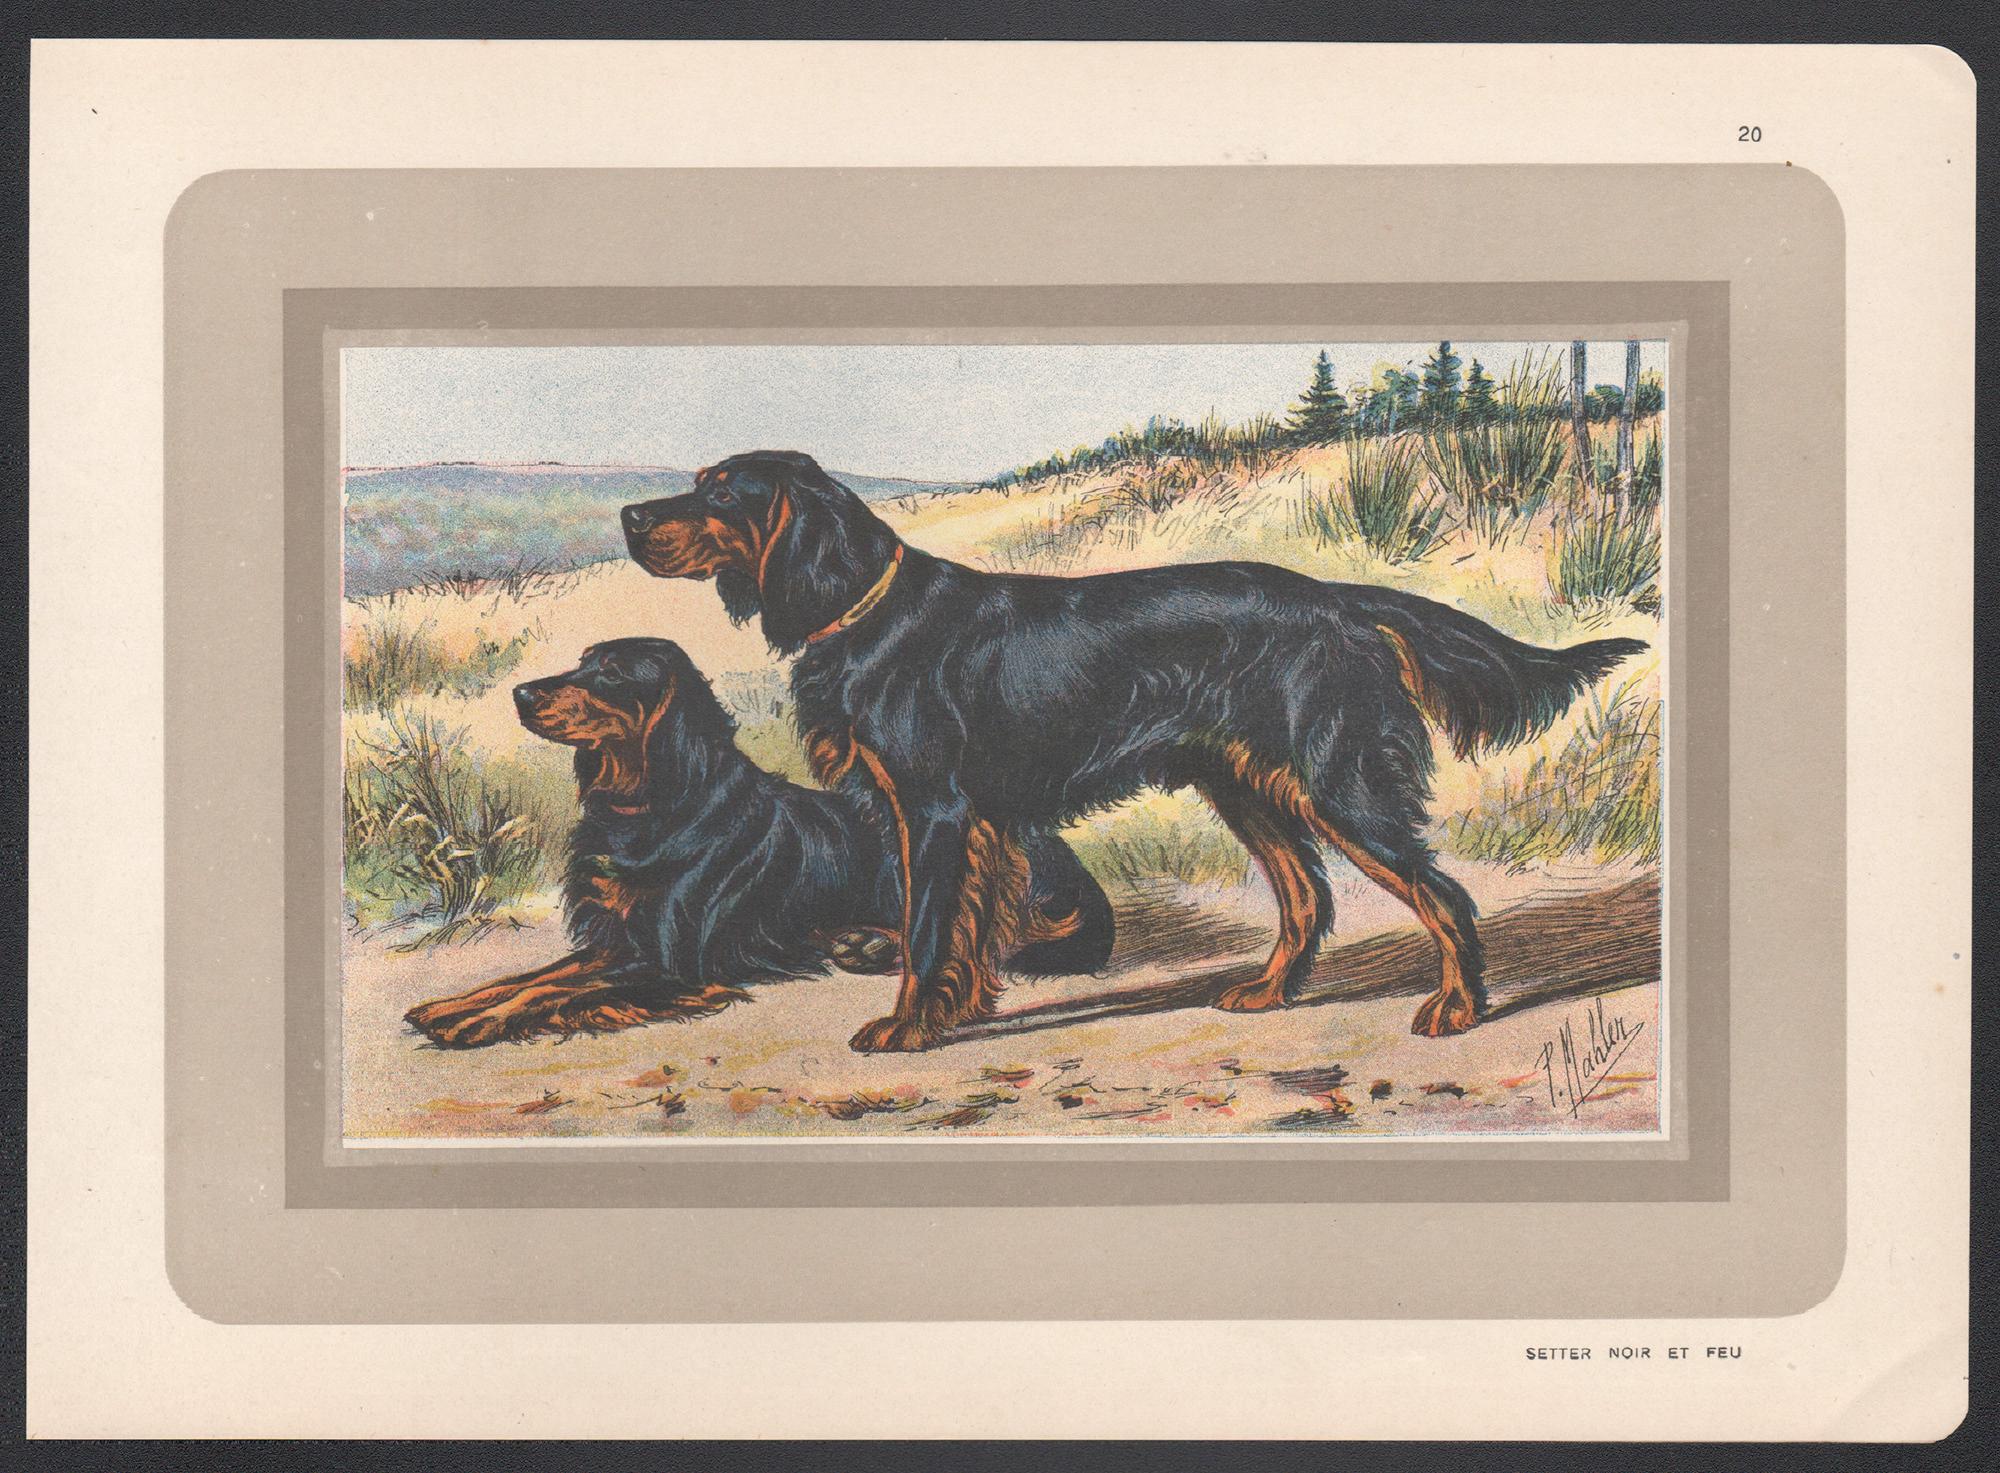 Gordon Setter, Französischer Chromolithographiedruck mit Hund, 1930er-Jahre – Print von P. Mahler